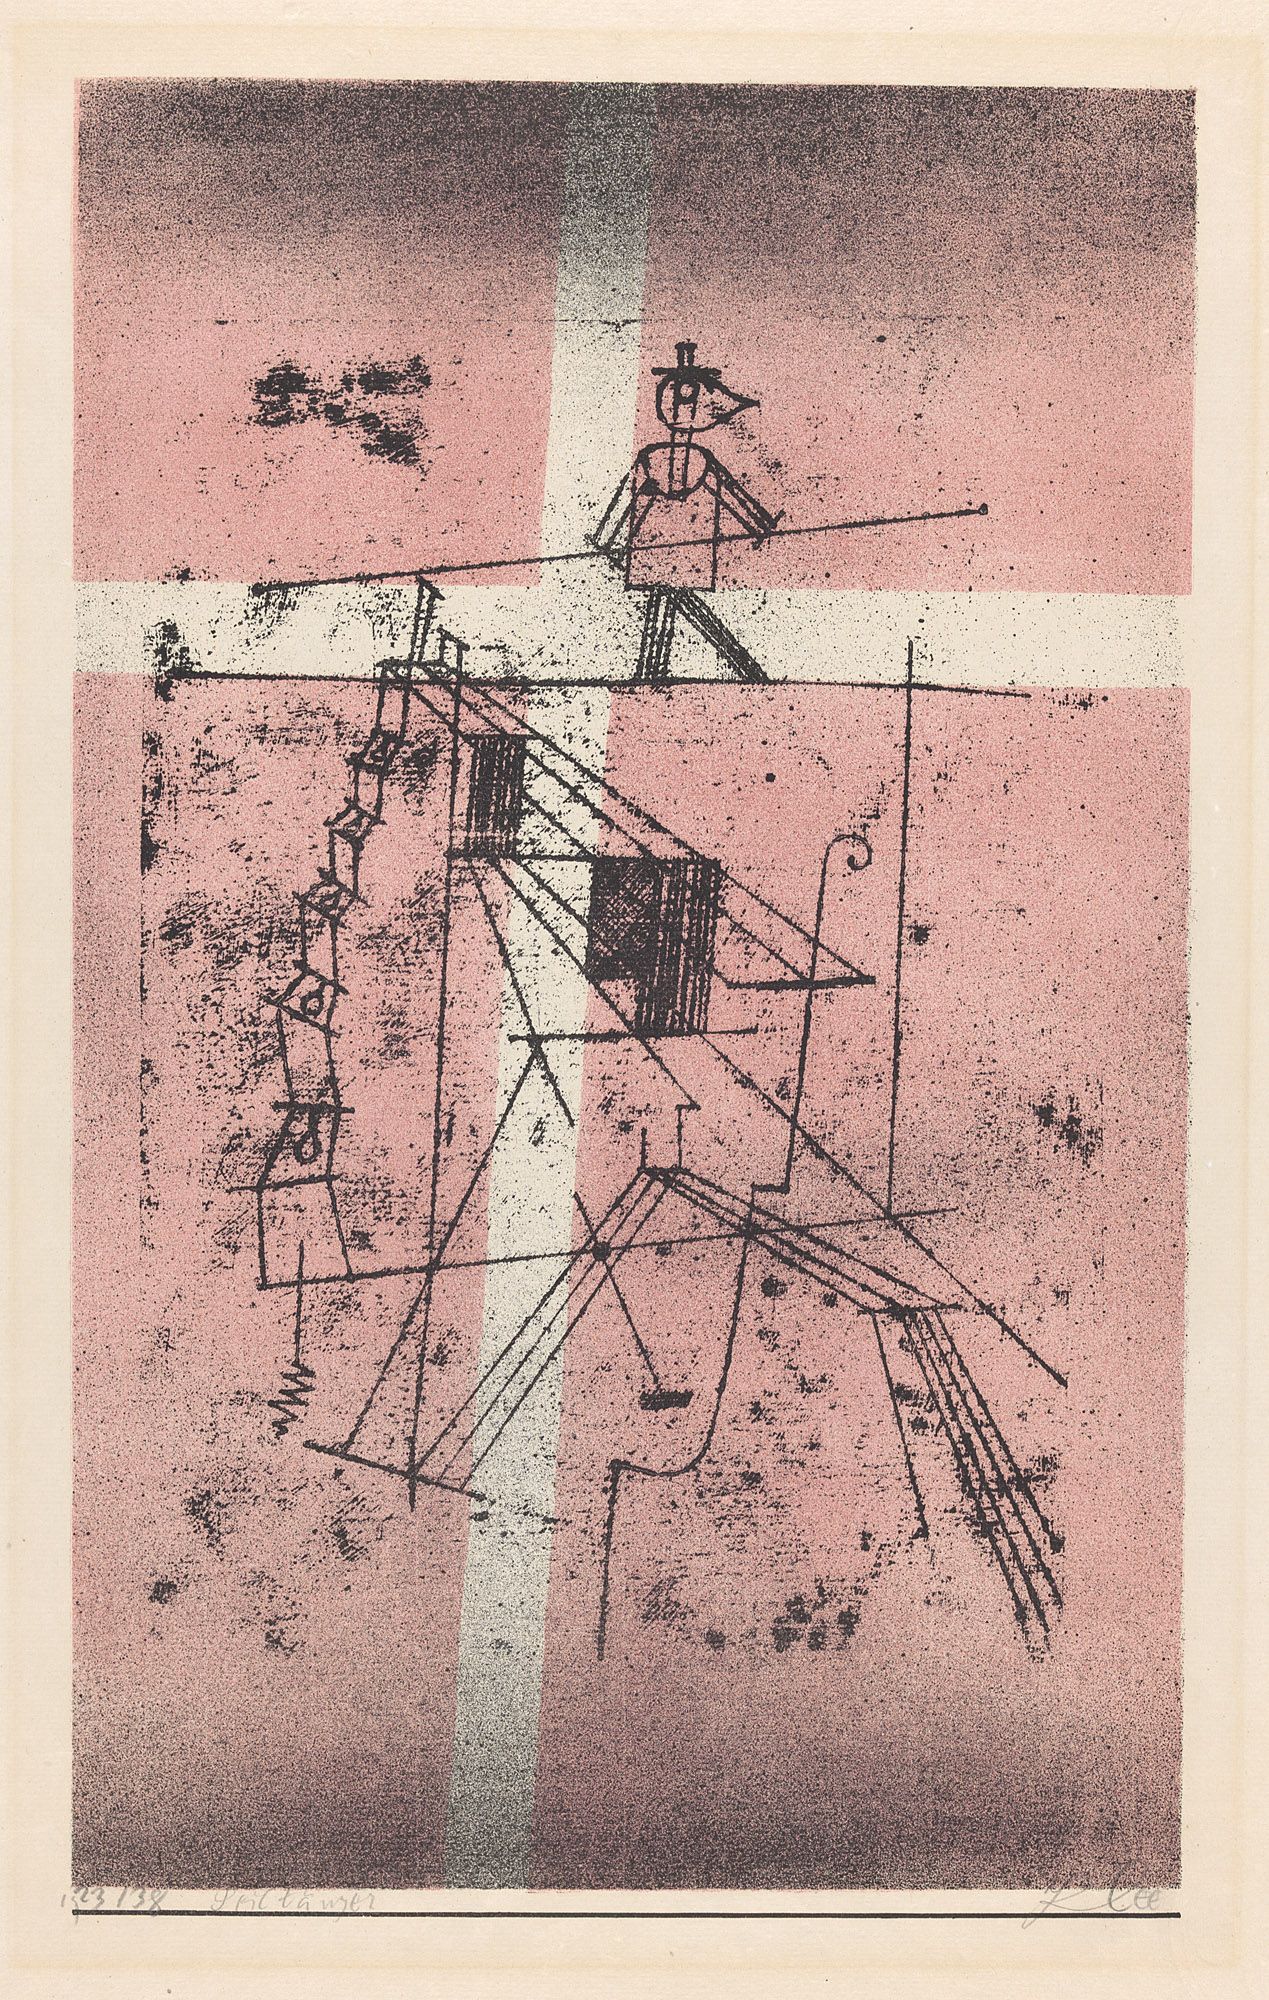 The Tightrope Walker by Paul Klee - 1923 - 48,7 x 32,2 cm  Zentrum Paul Klee